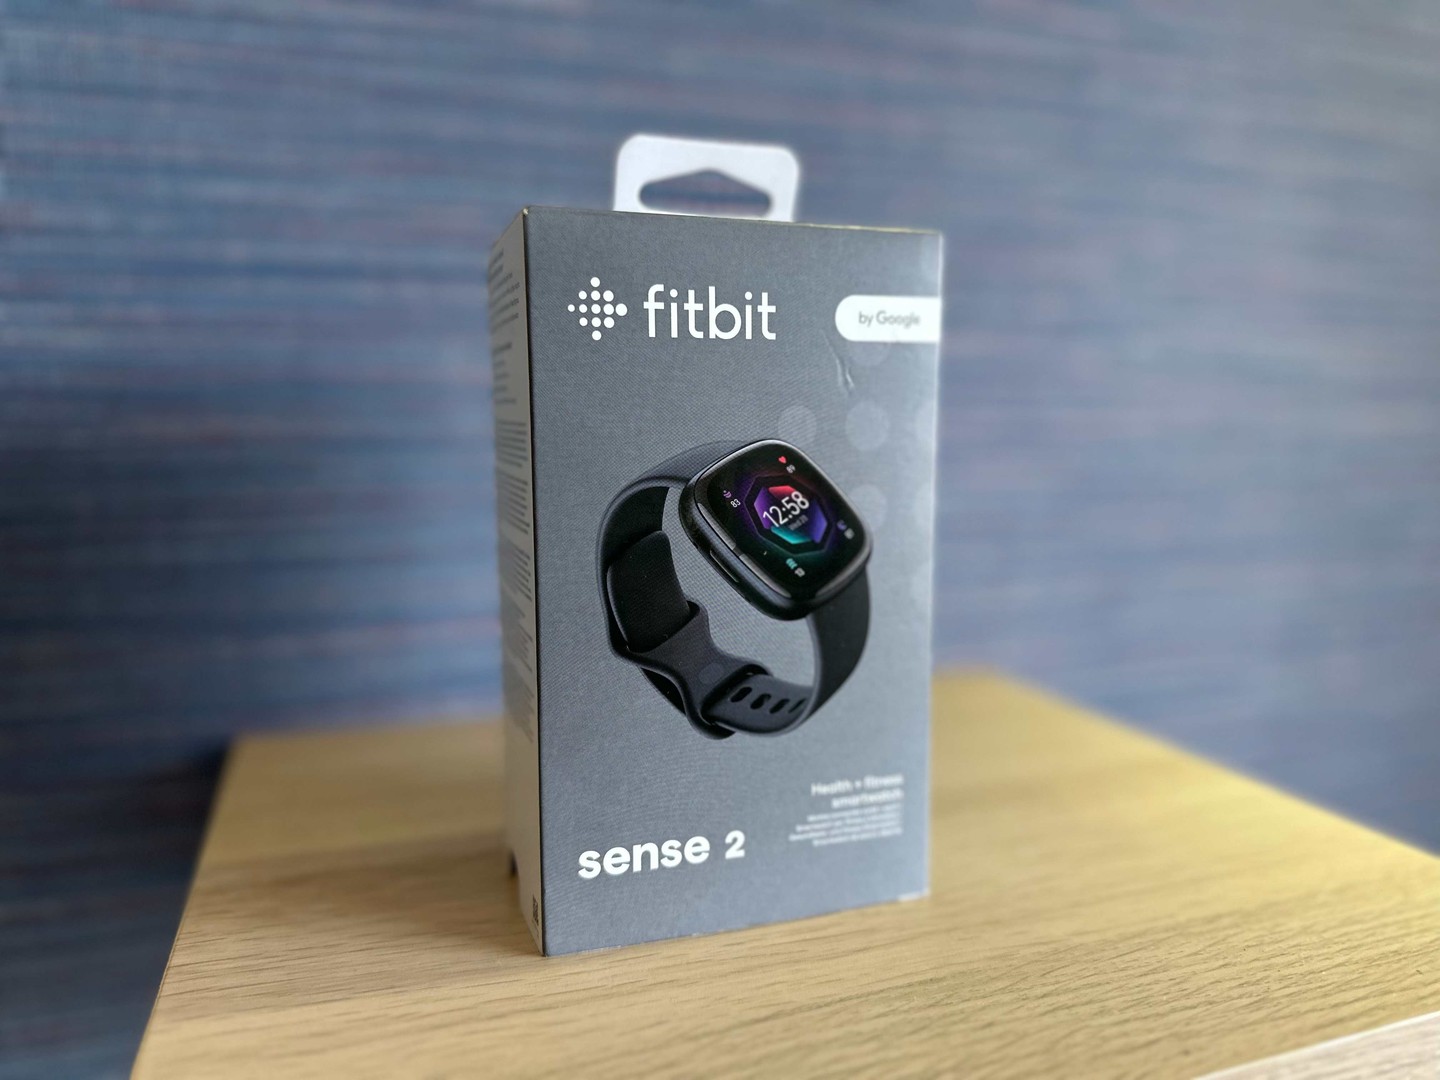 accesorios para electronica - Reloj Fitbit Sense 2 by Google (2022) Nuevo Sellado, Garantía,$ 10,900 NEG